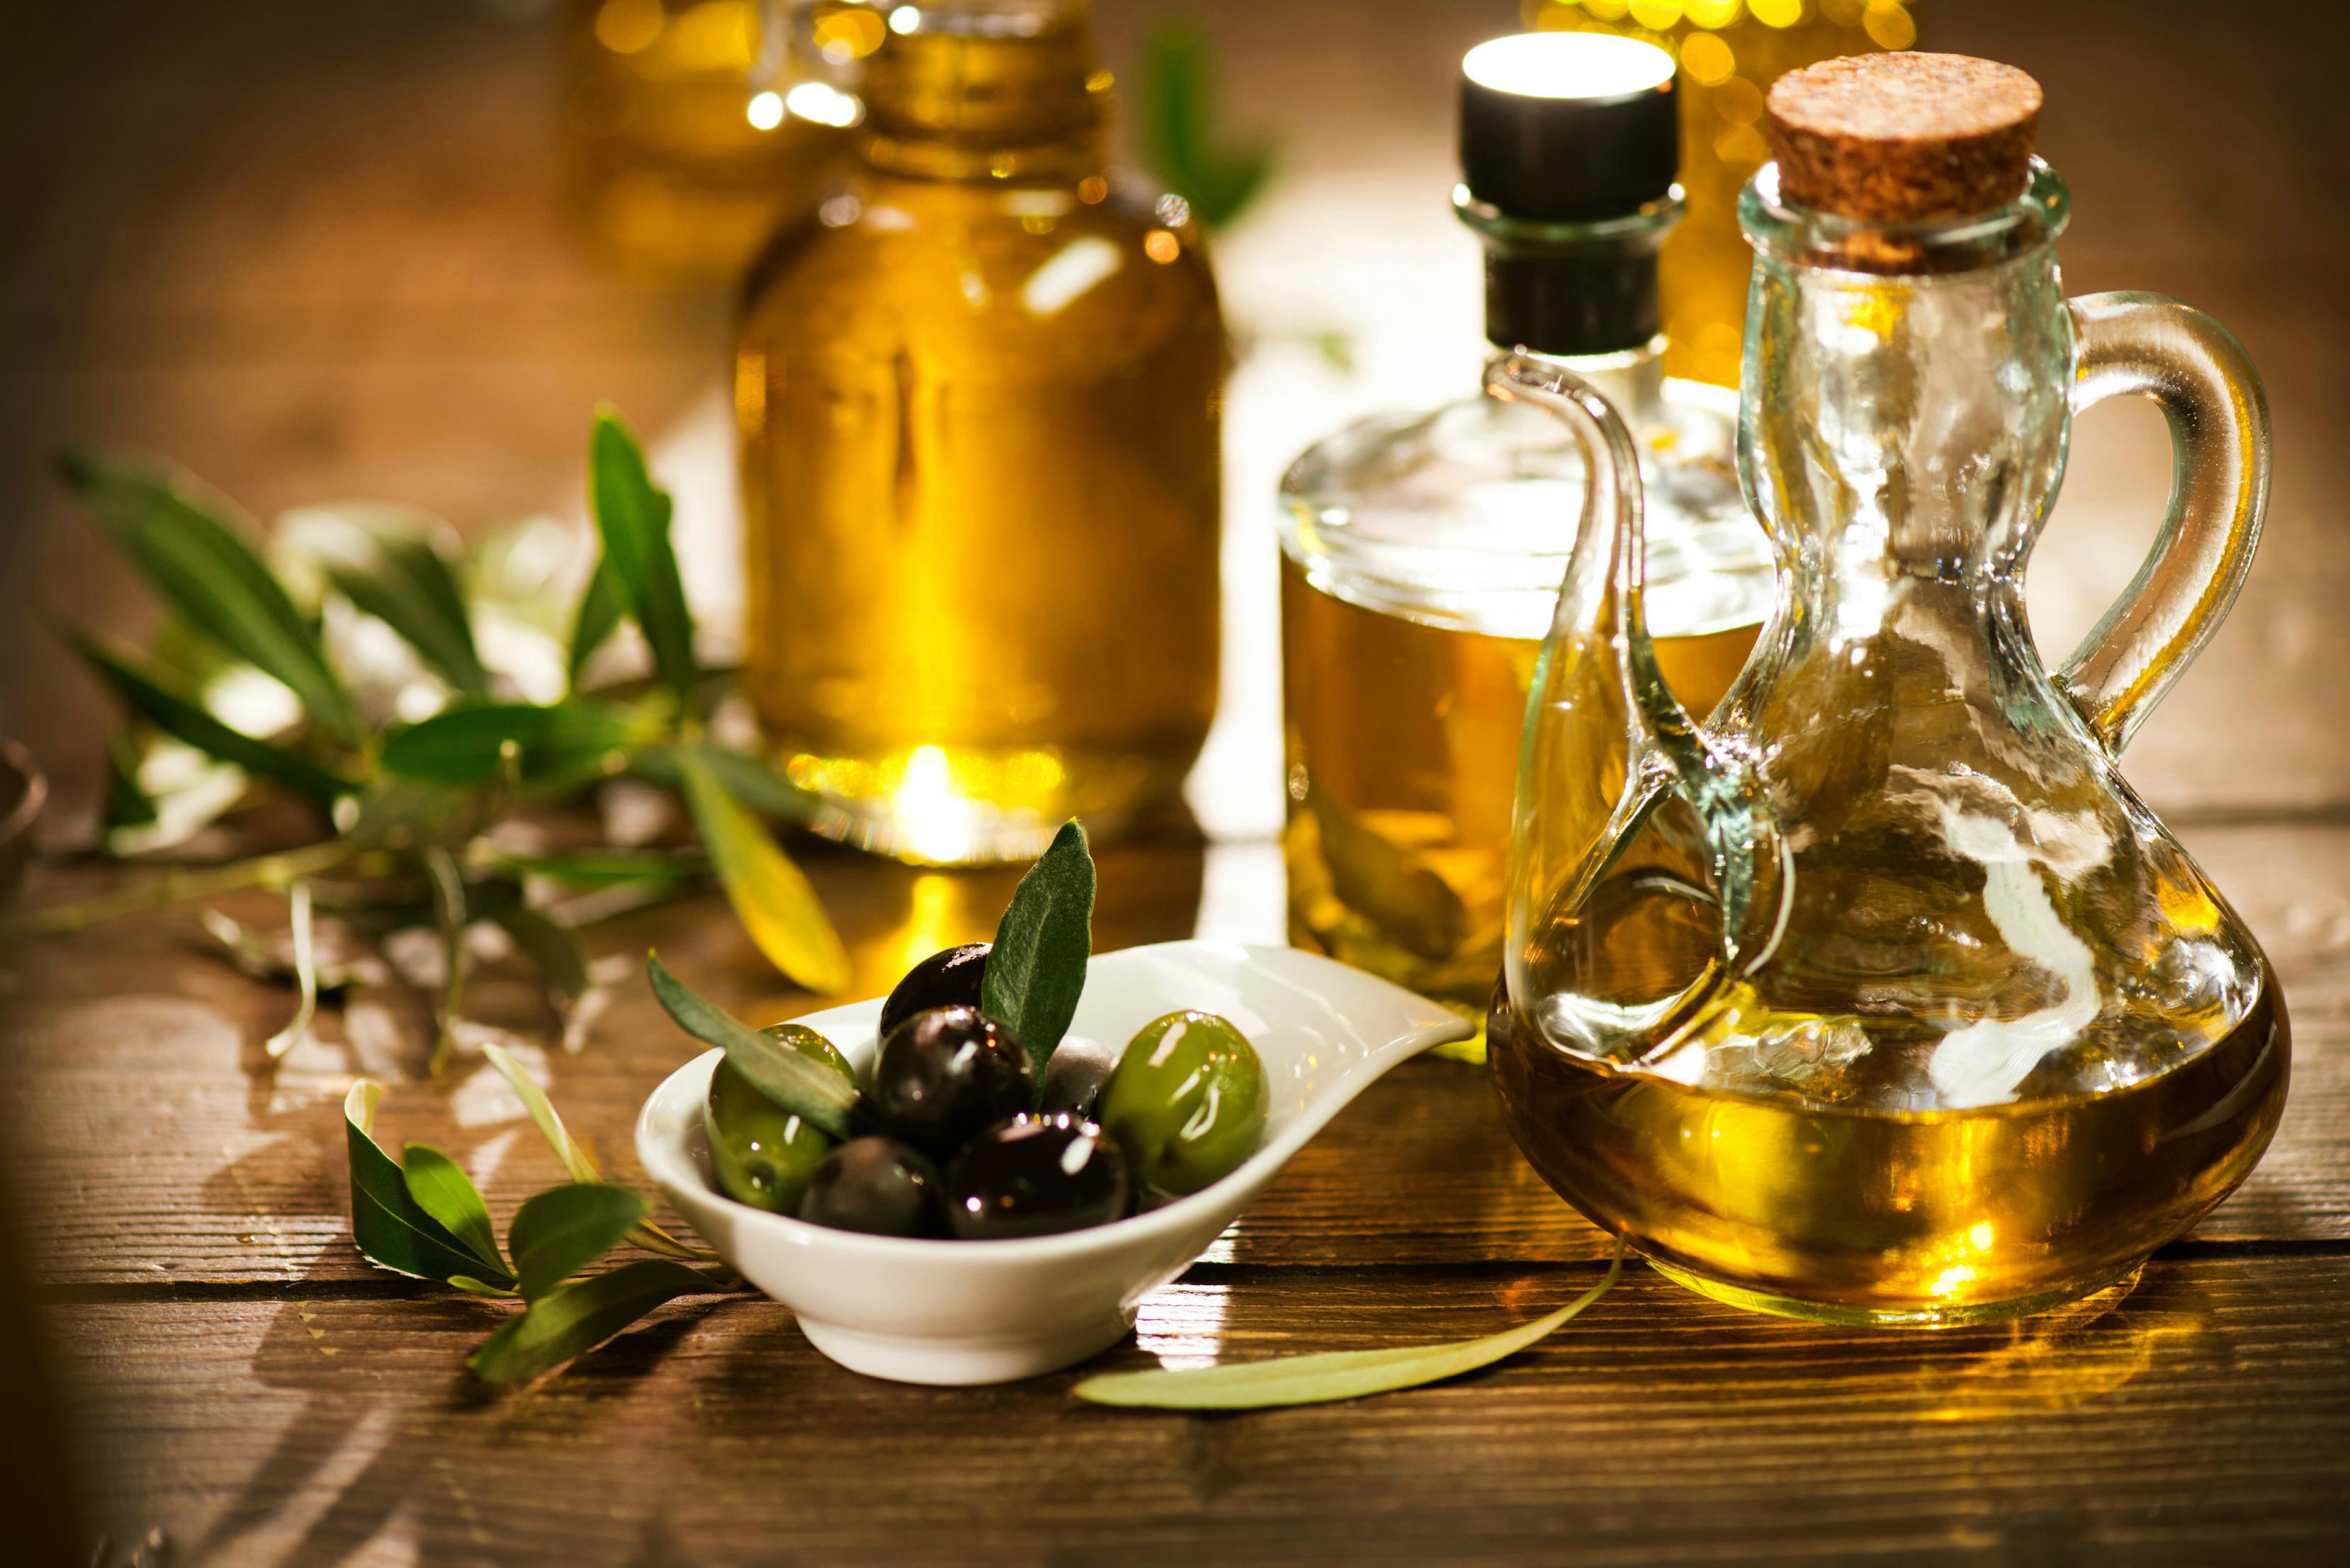 La exportación de aceite de oliva de Turquía se acerca a los 100 millones de dólares